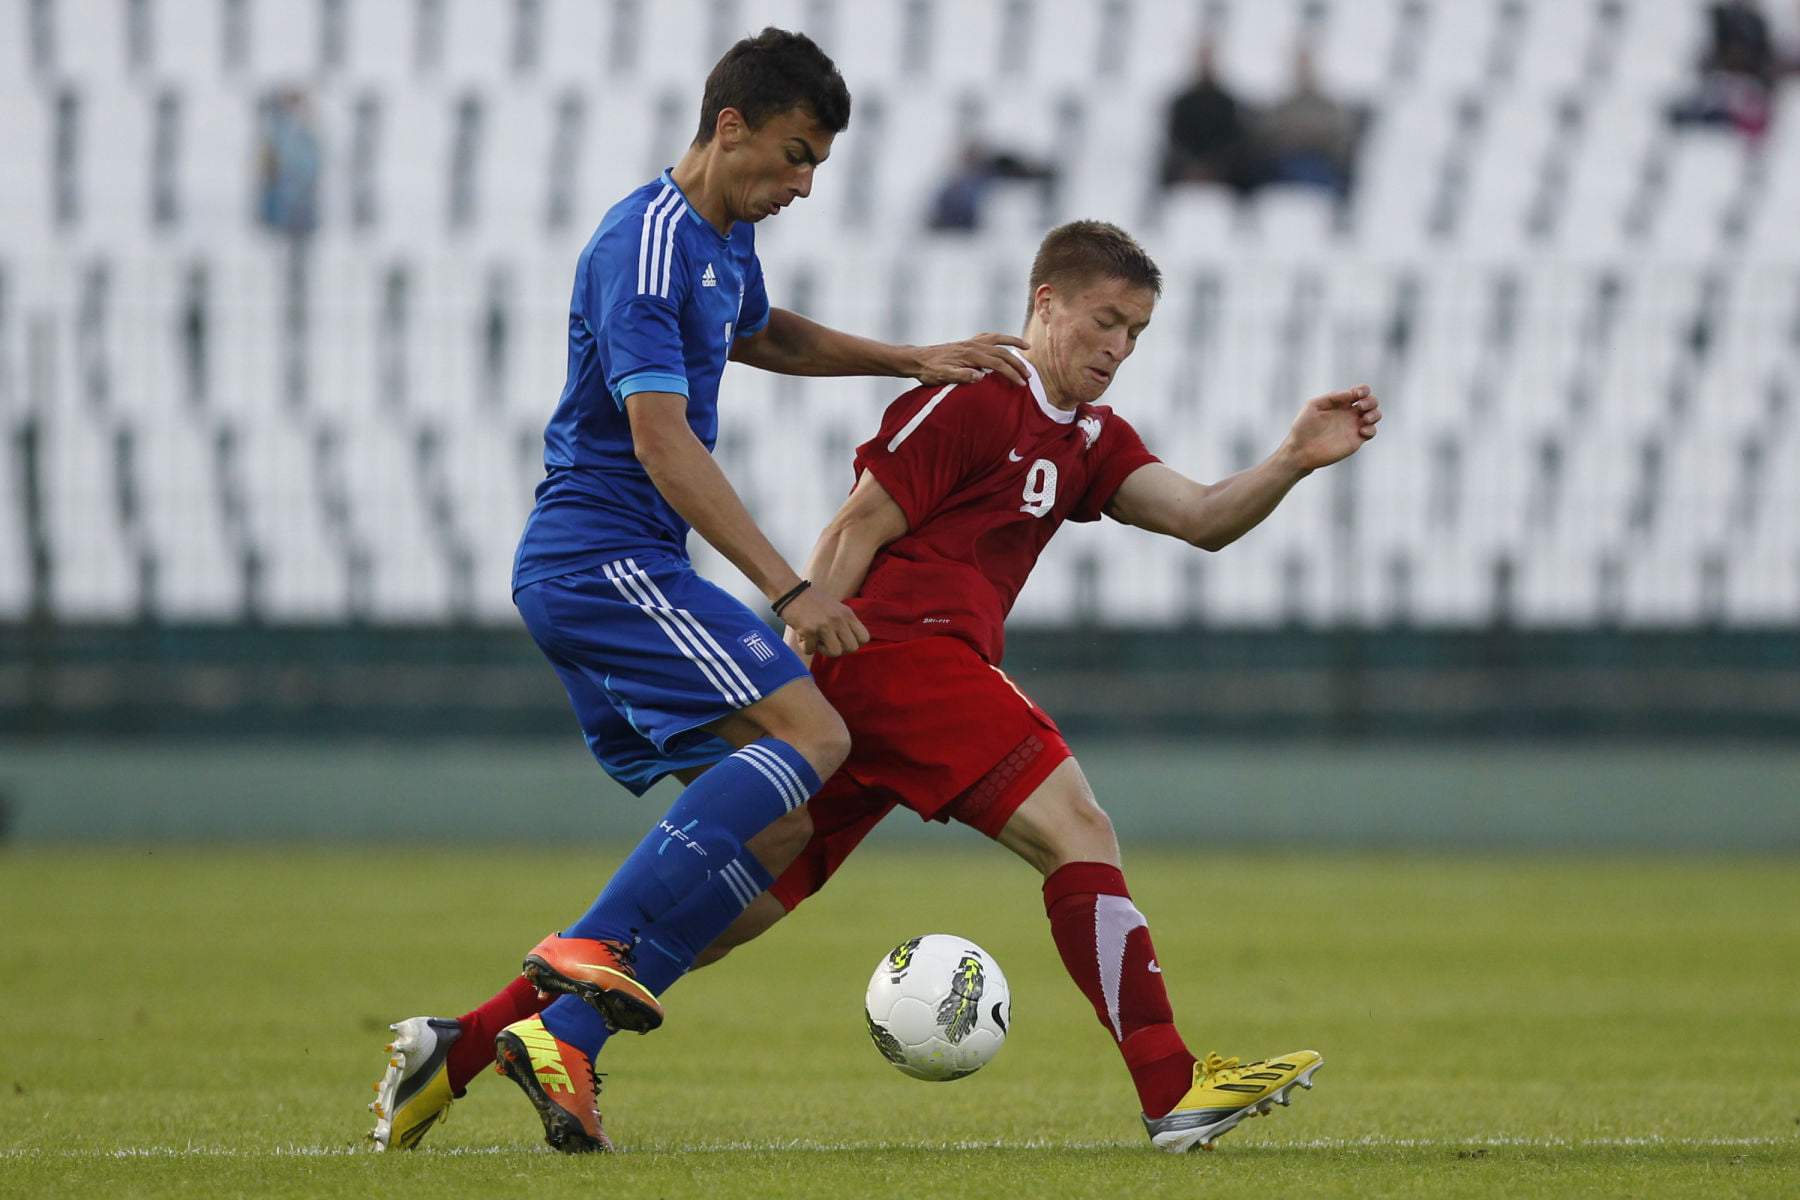 Czerwiec 2013 roku, Mygas w starciu z Radosławem Murawskim podczas meczu Polski z Grecją w kategorii U-19. Fot. newspix.pl